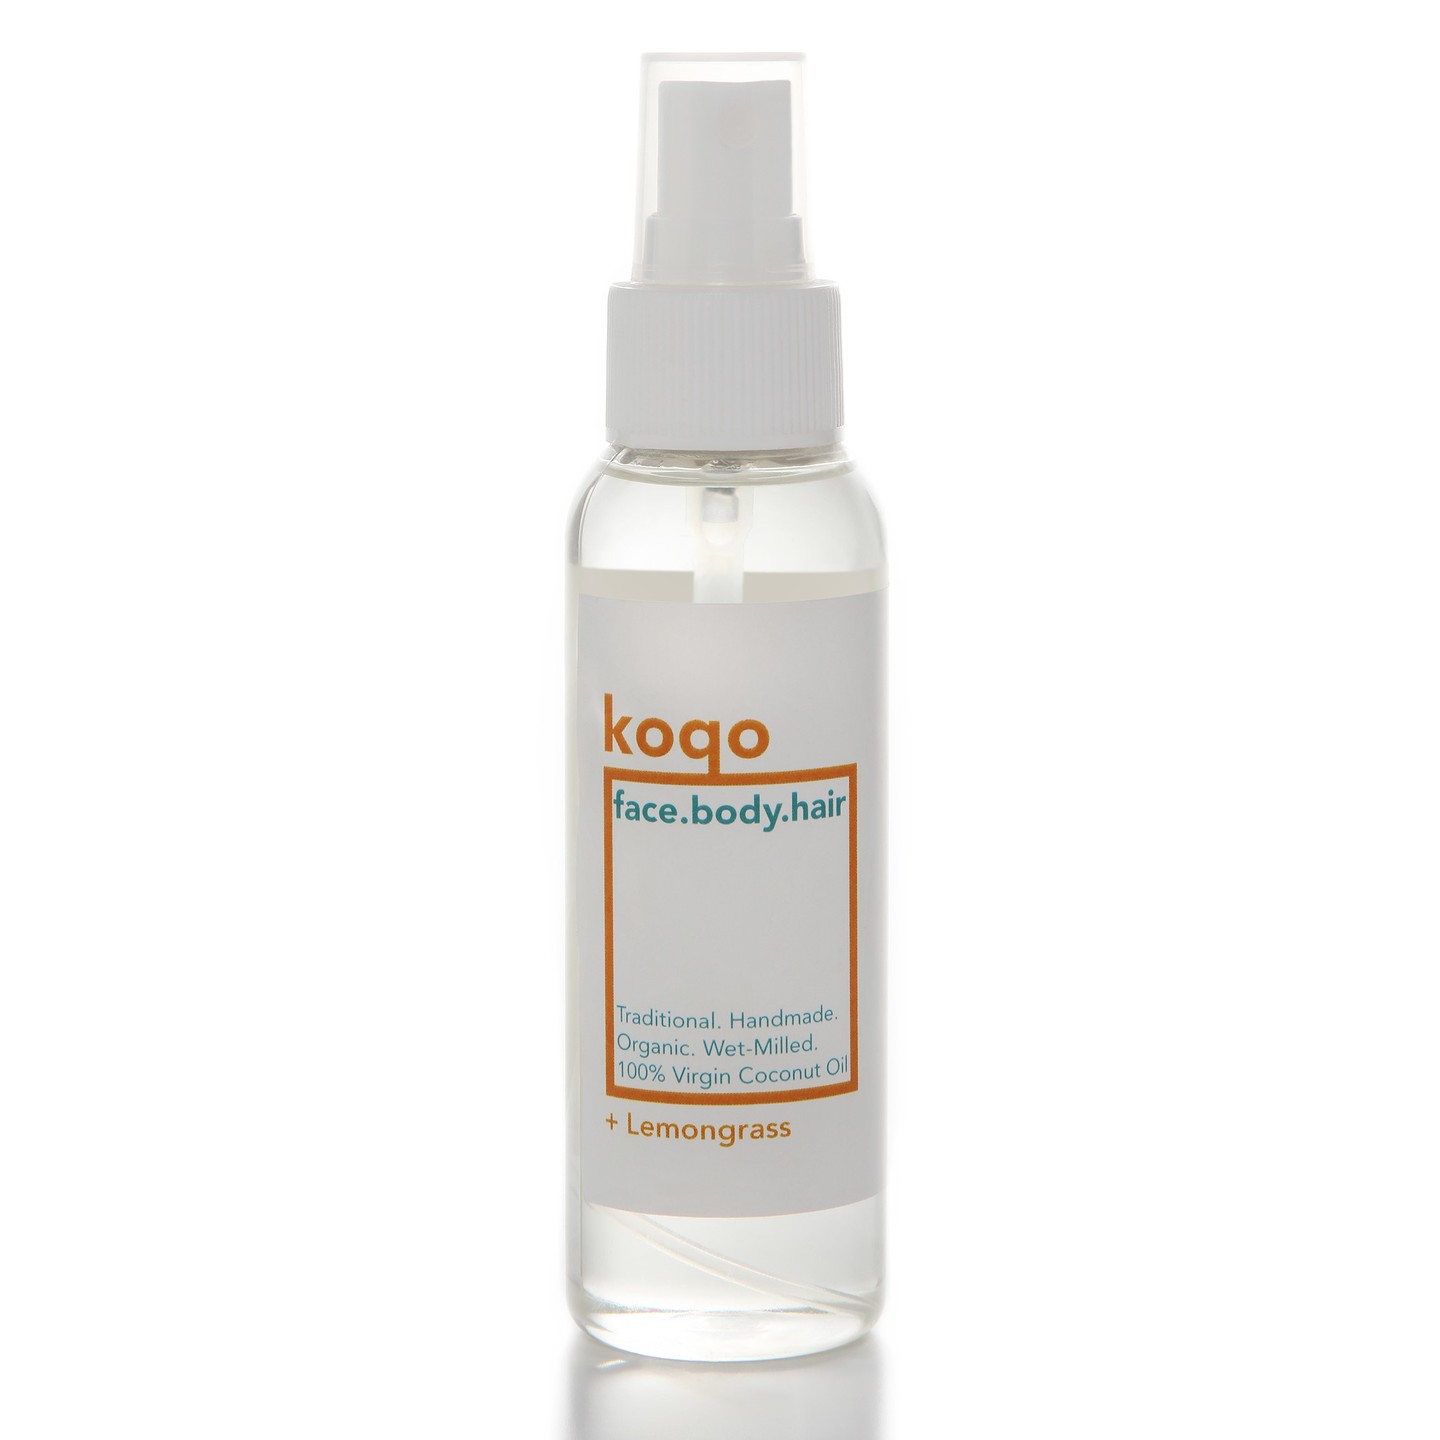 koqo face.body.hair Handmade & Wet-Milled Coconut Oil + Lemongrass 100ml Spray